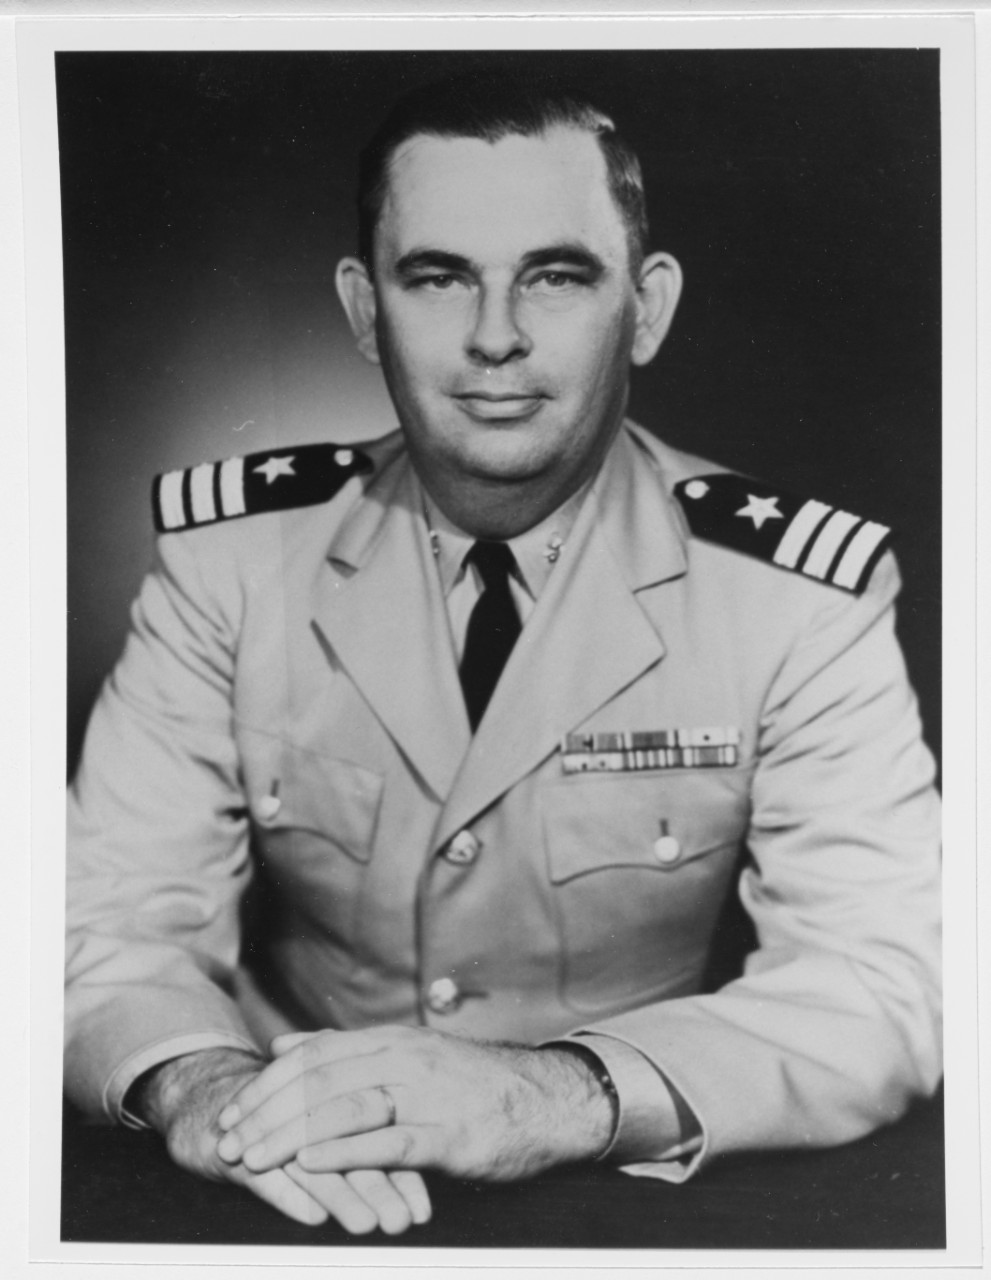 Commander Franklin D. Buckley, USN. Awarded Bronze Star for heroism.